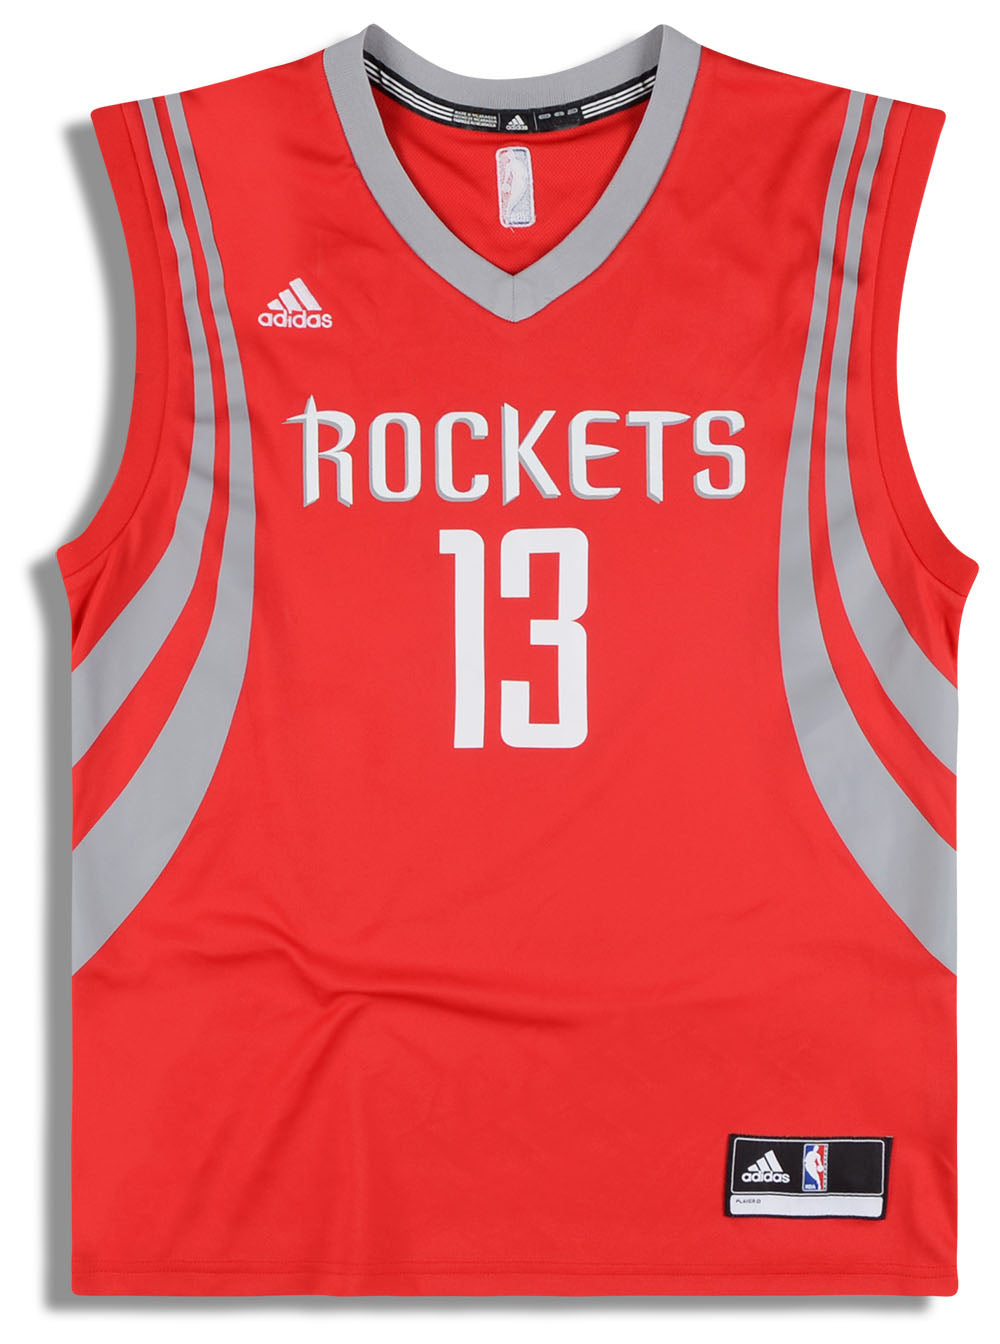 adidas, Shirts, Houston Rockets Jersey